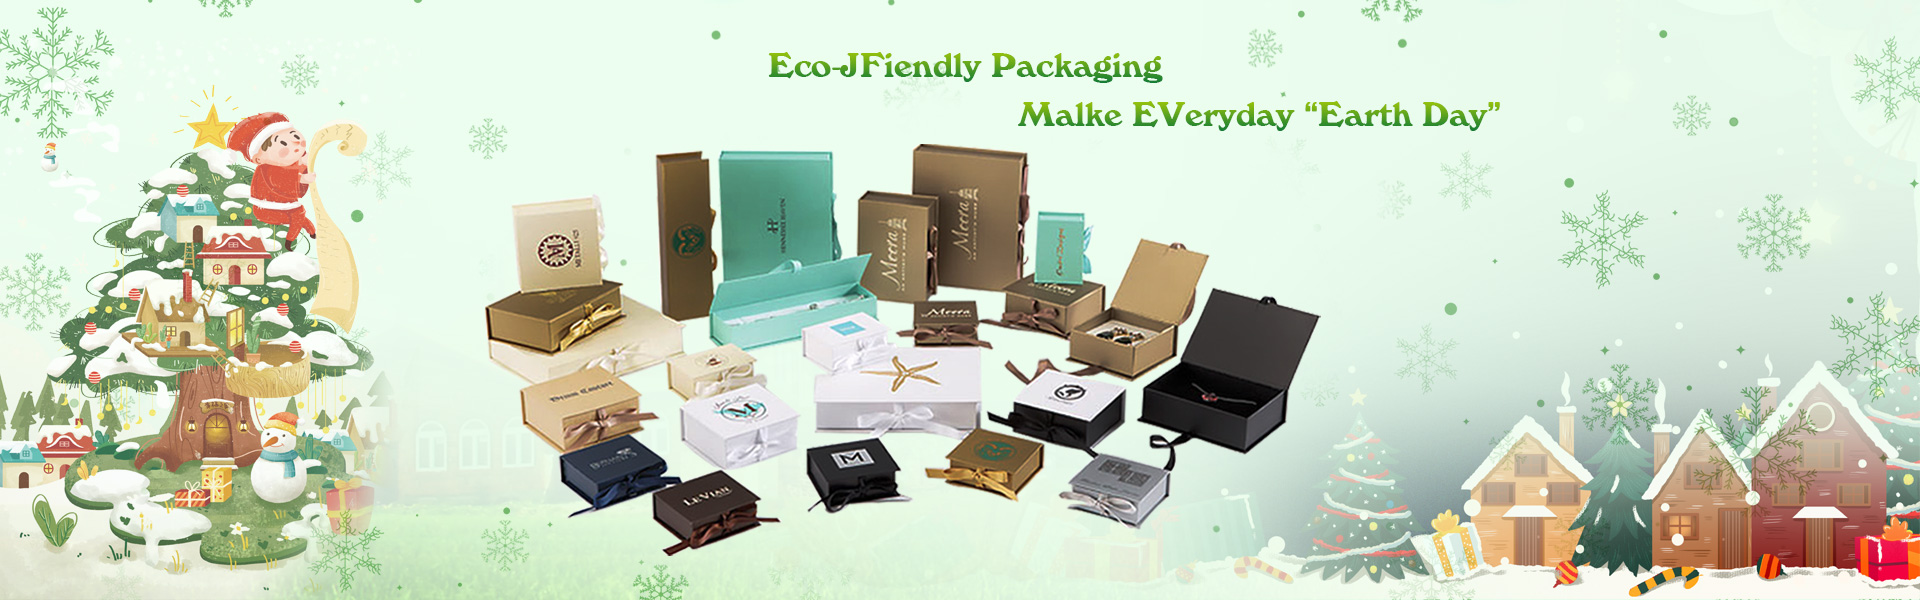 กล่องของขวัญ, กล่องบรรจุ, ฉลาก,Dongguan chengyuan packaging products Co,.Ltd